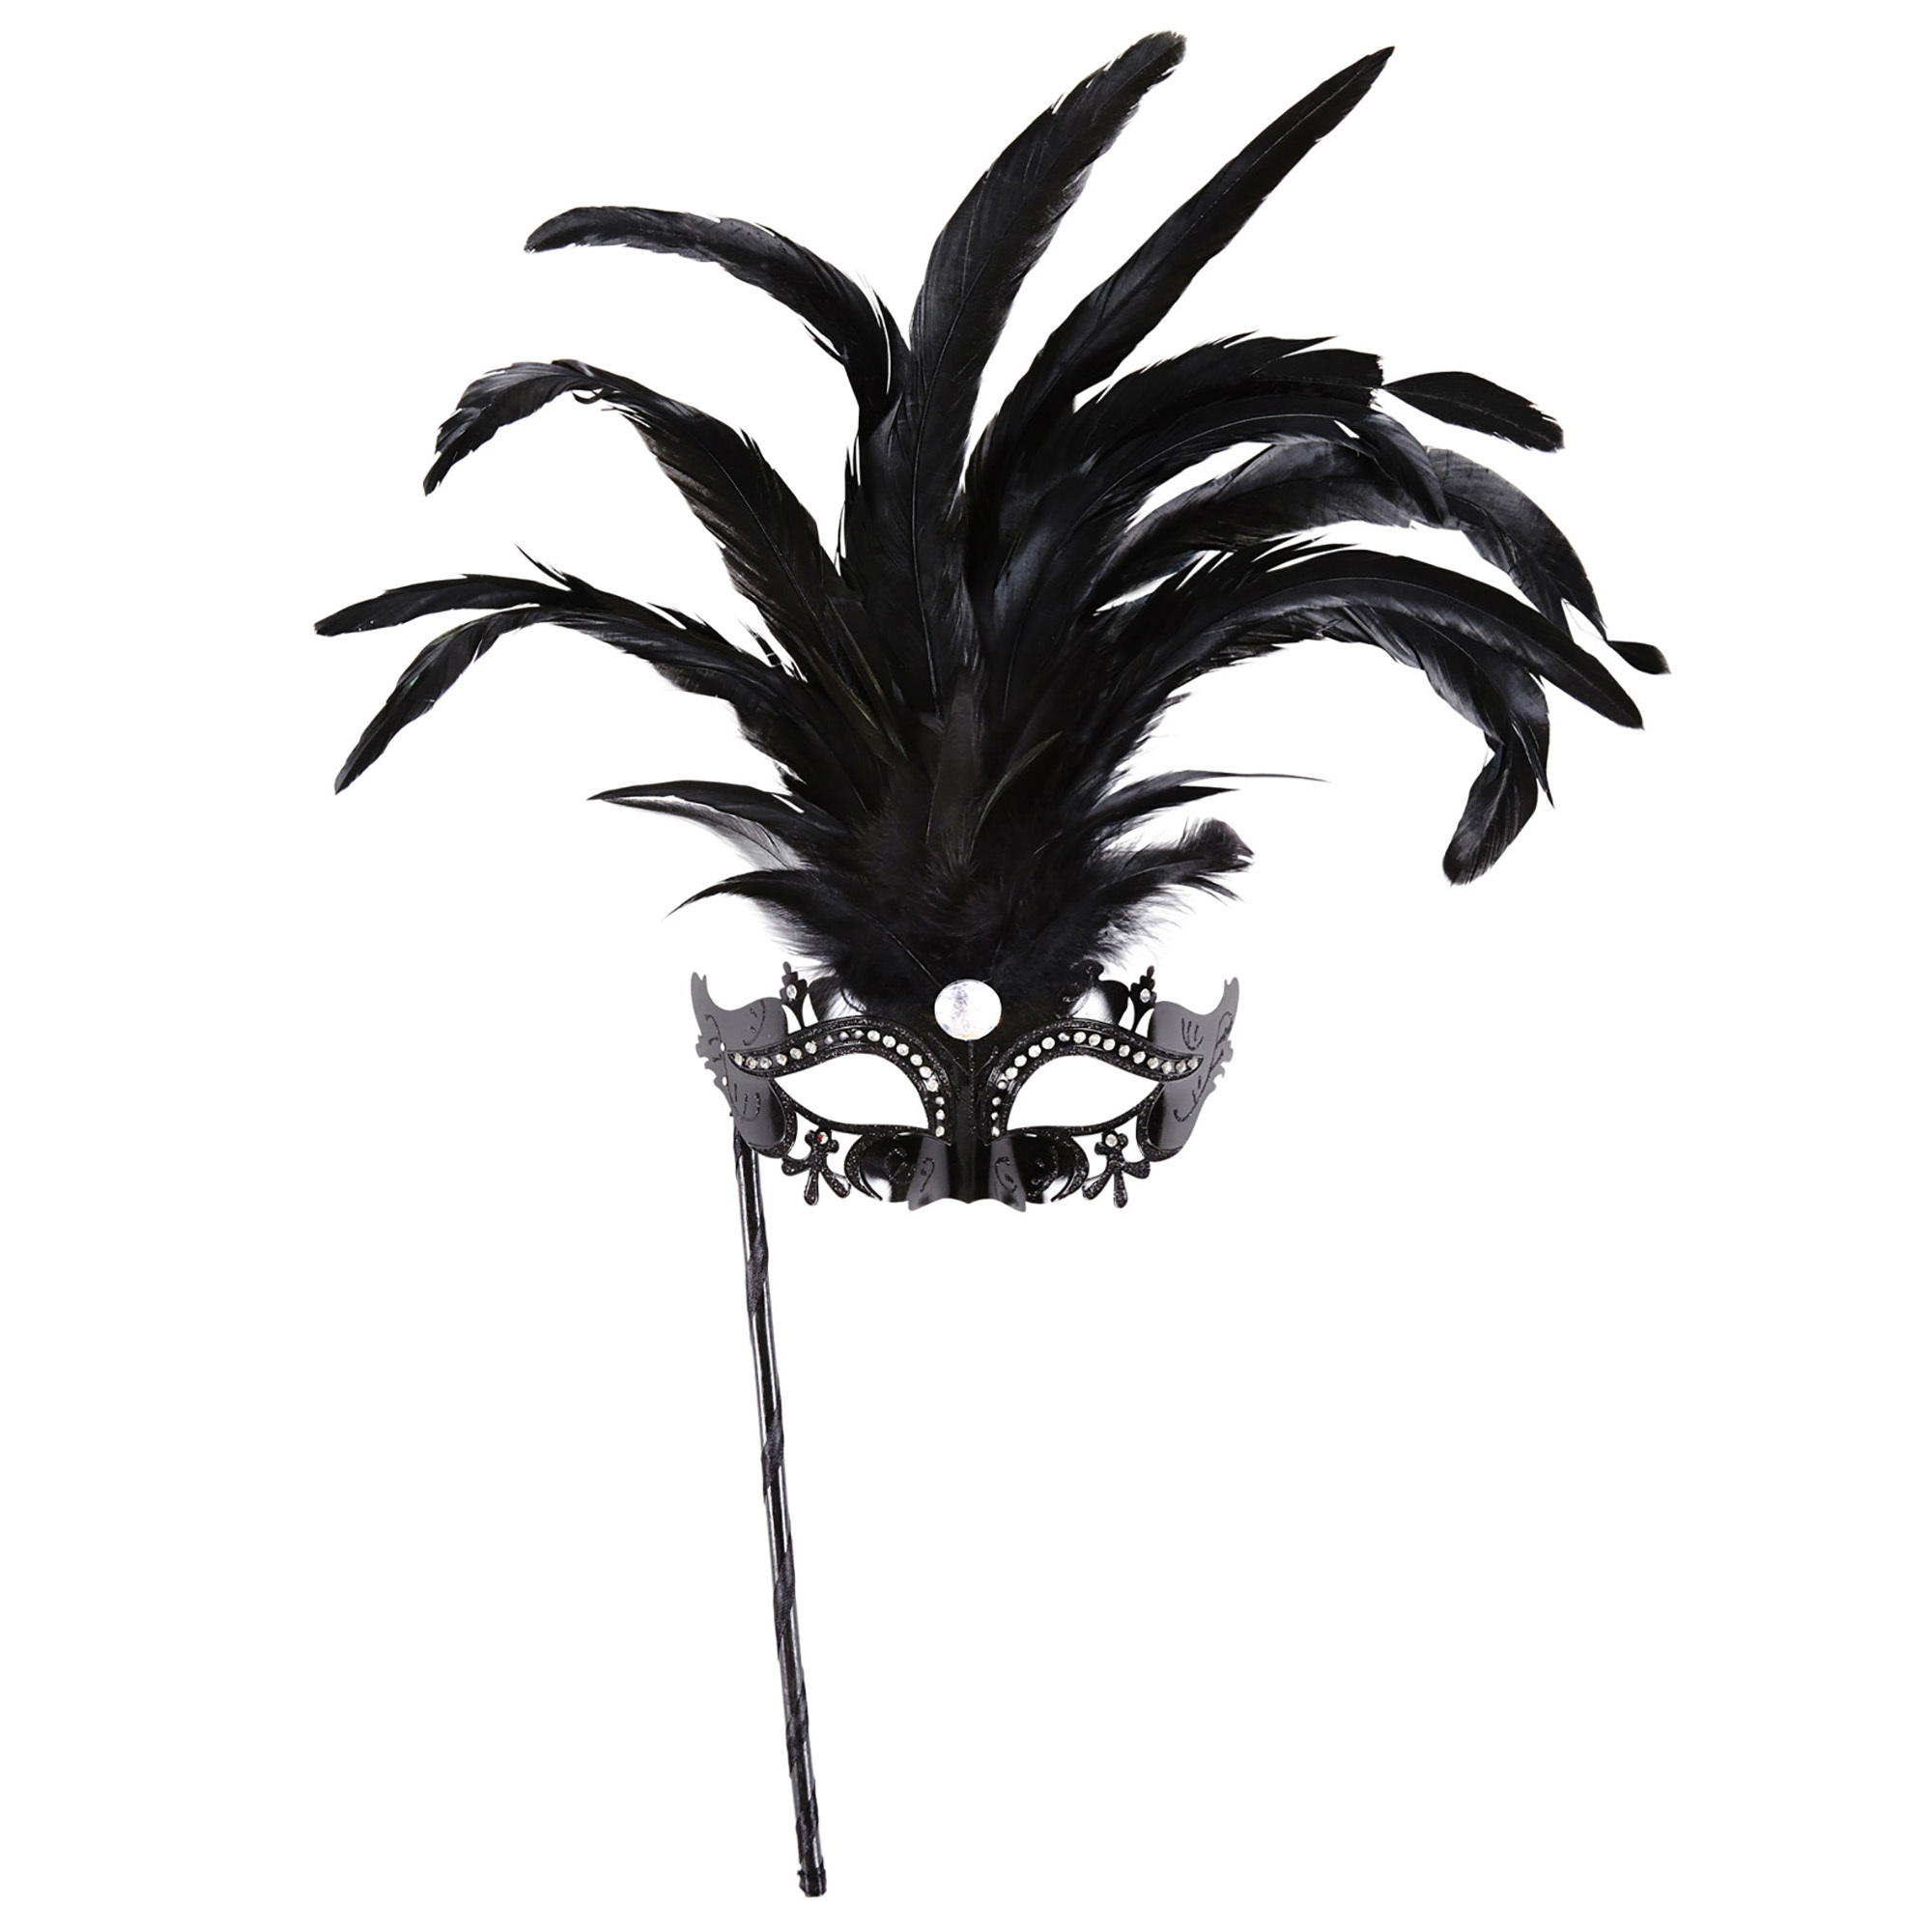 oogmasker met stokje, zwart luxe versie